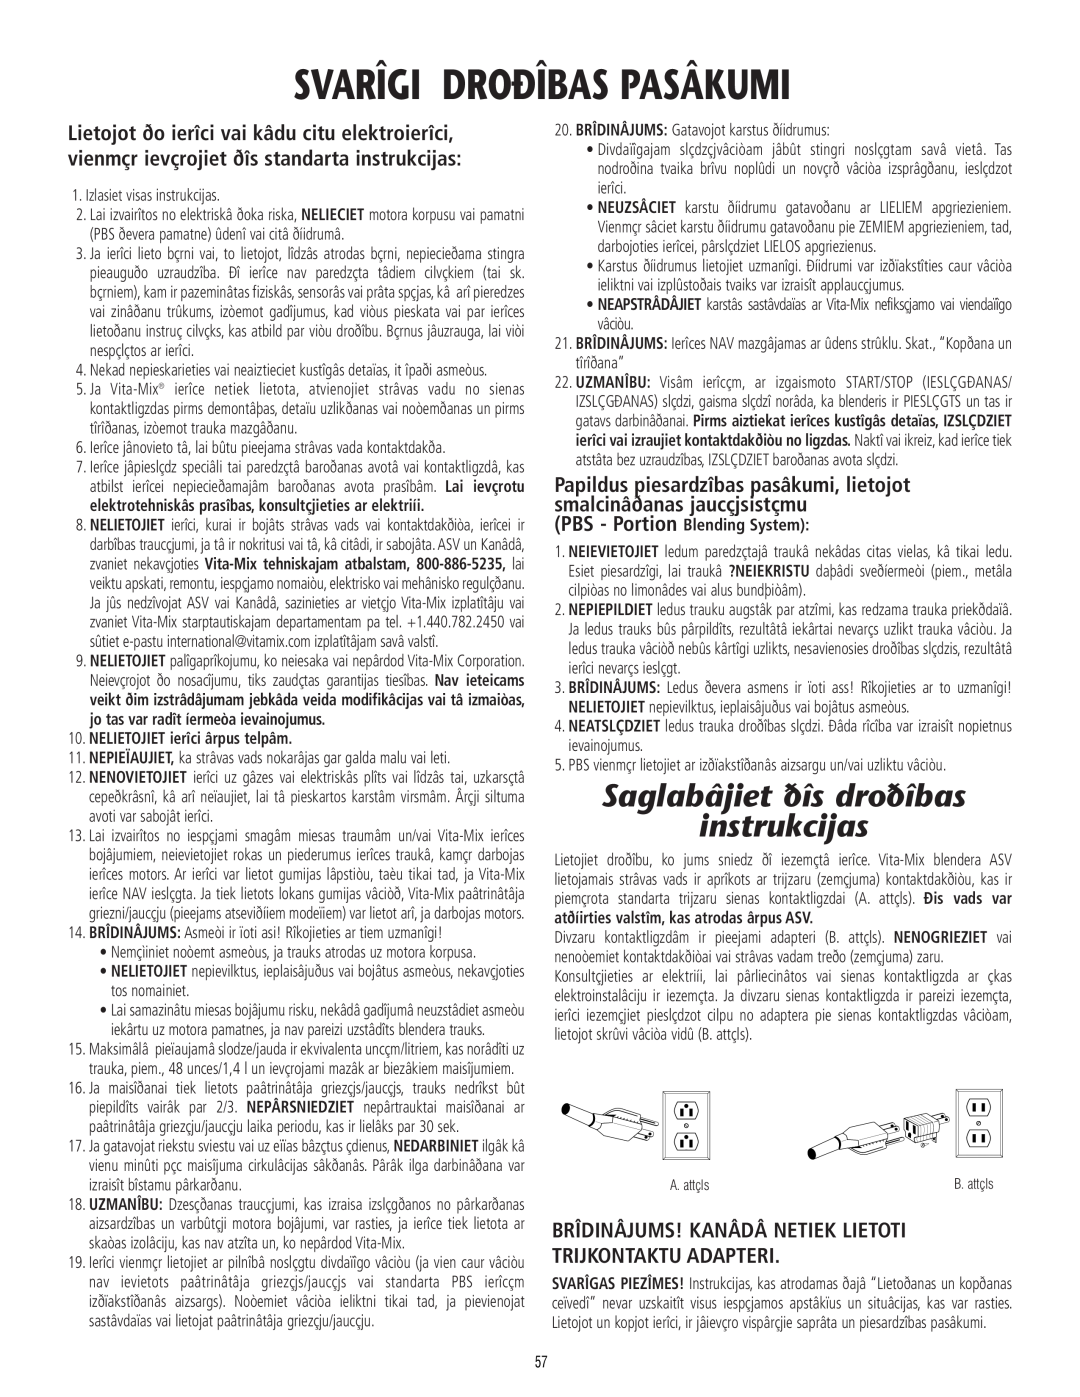 Vita-Mix 101807 manual Svarîgi Droðîbas Pasâkumi, Saglabâjiet ðîs droðîbas instrukcijas 